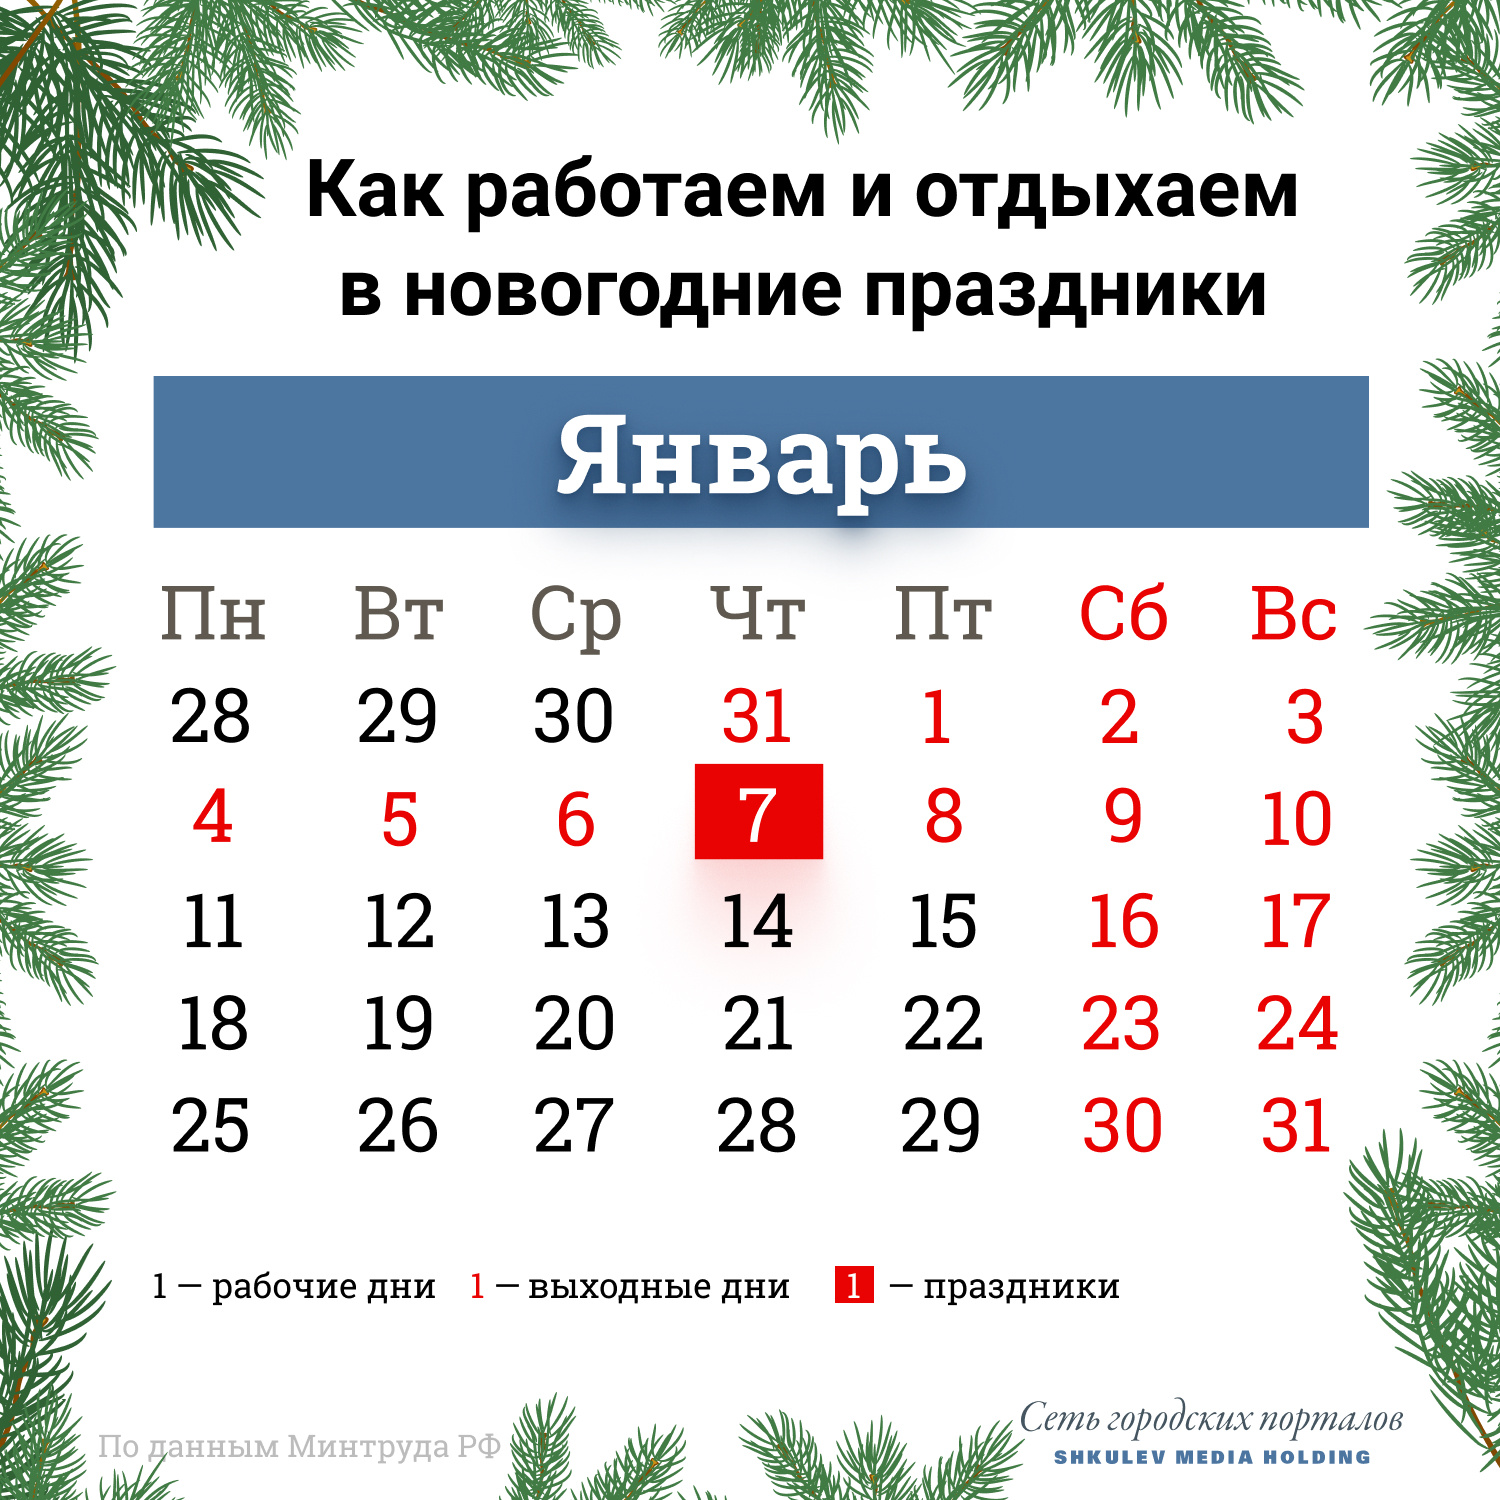 В следующем году 31 декабря уже точно будет выходным днем для всей страны